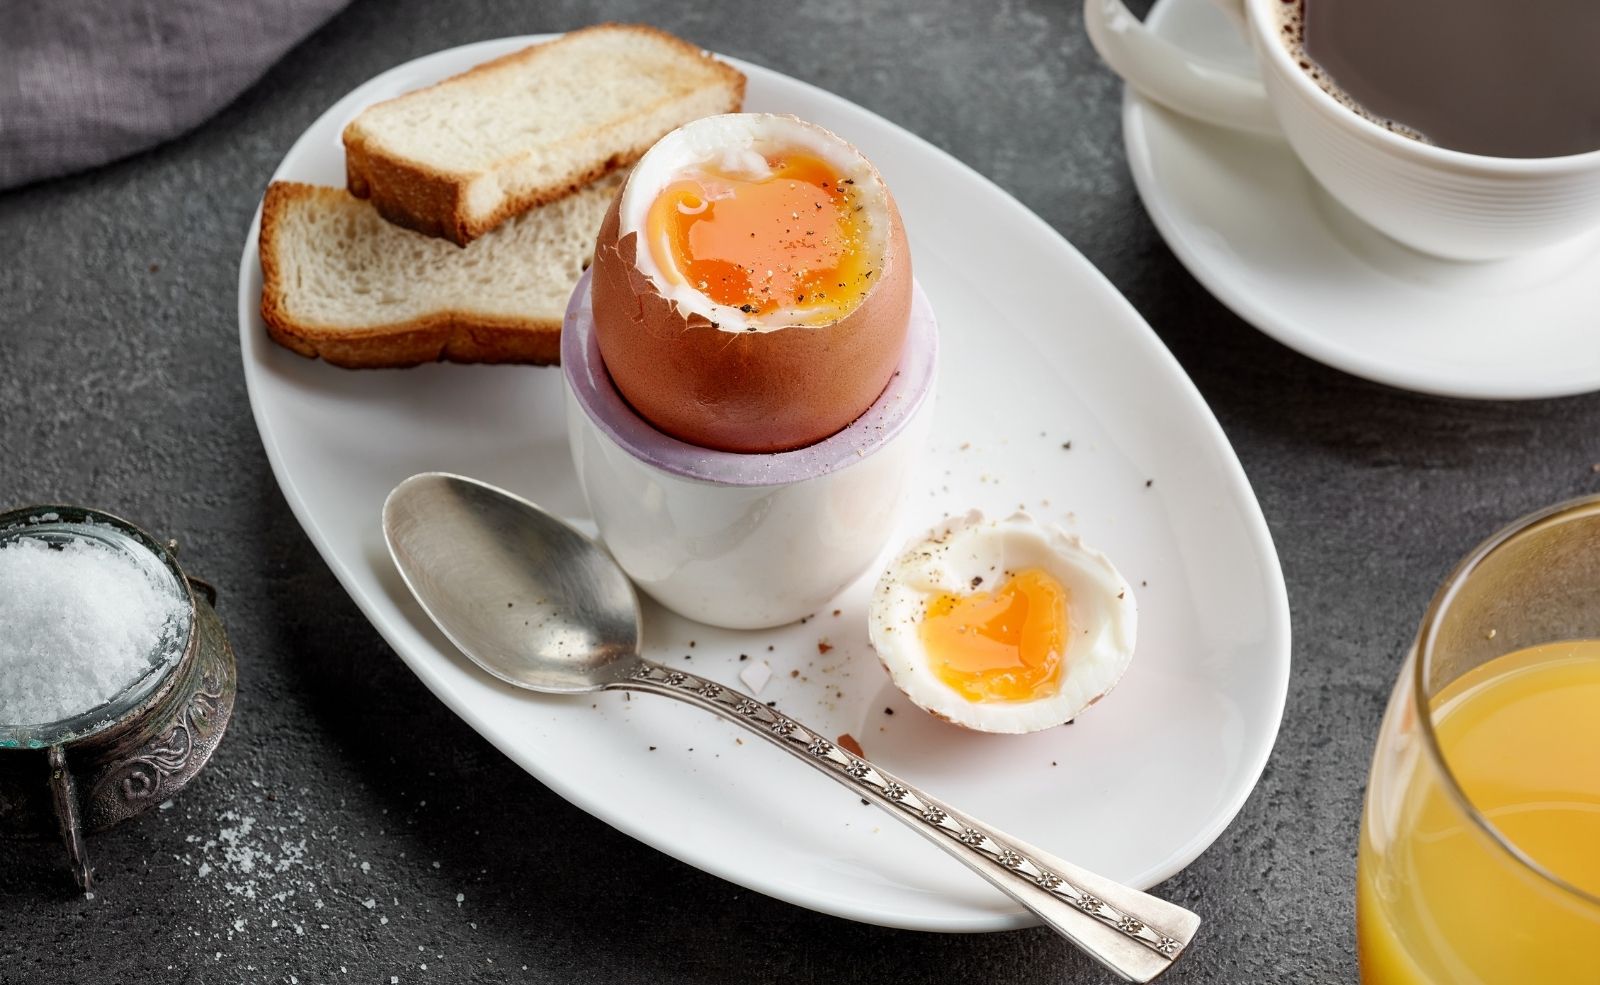 Weiches Ei: Wie lange muss es kochen?